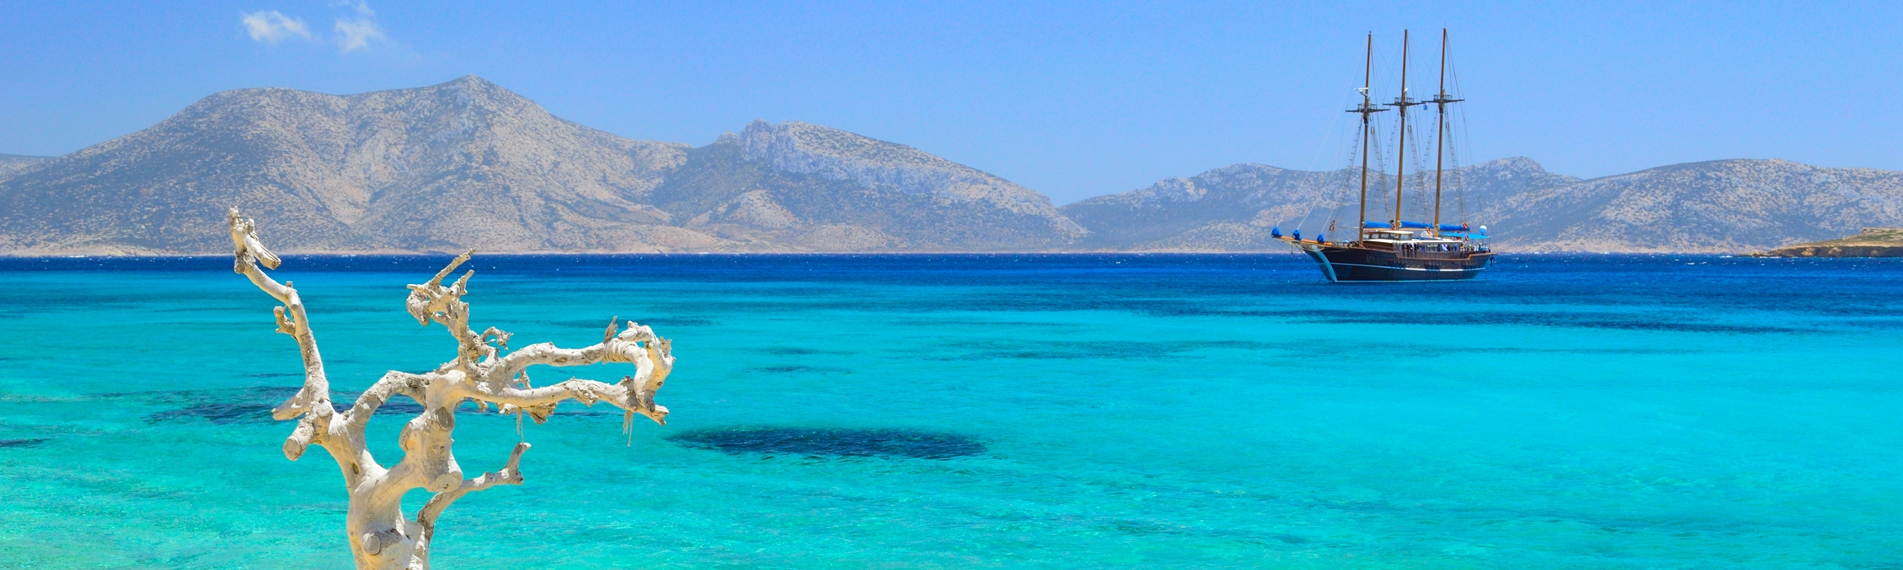 Il mare di Koufonissi dove un veliero naviga lambito dalle onde delle isole Cicladi